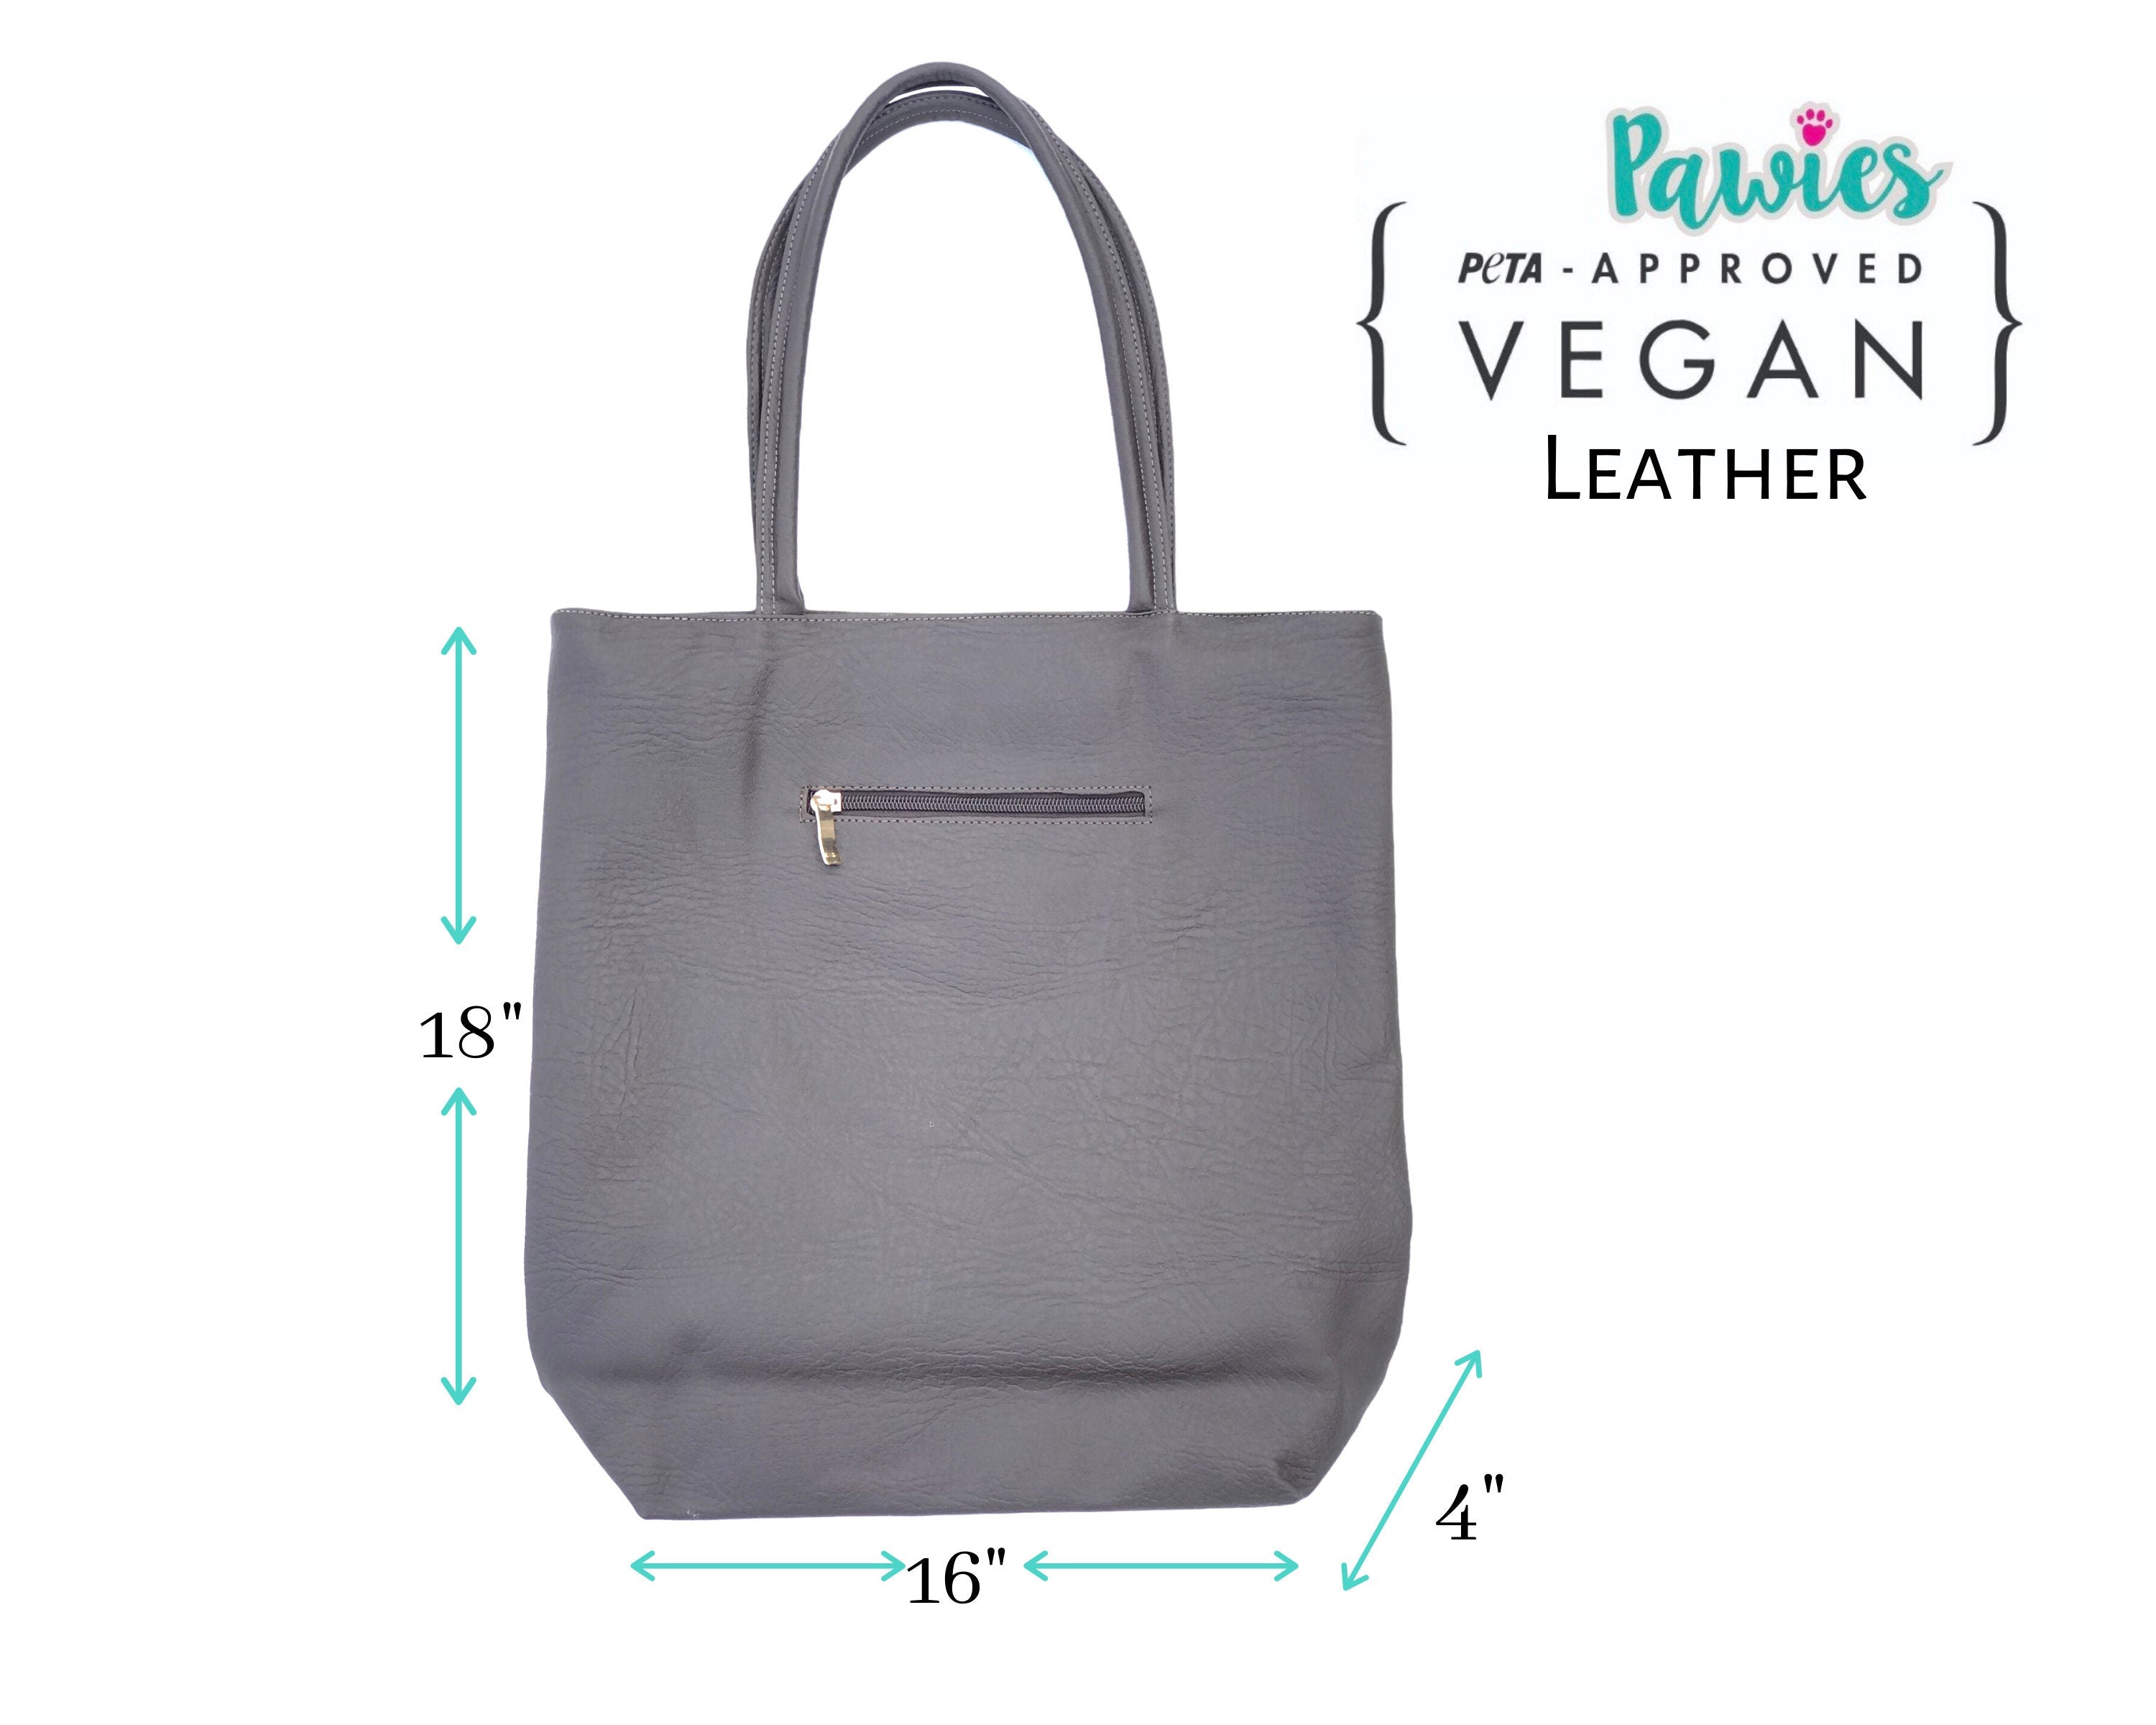 Corgi Vegan Leather Tote bag, tote bag, animal lovers, dog lover, pawies, vegan leather, corgi, hand bag